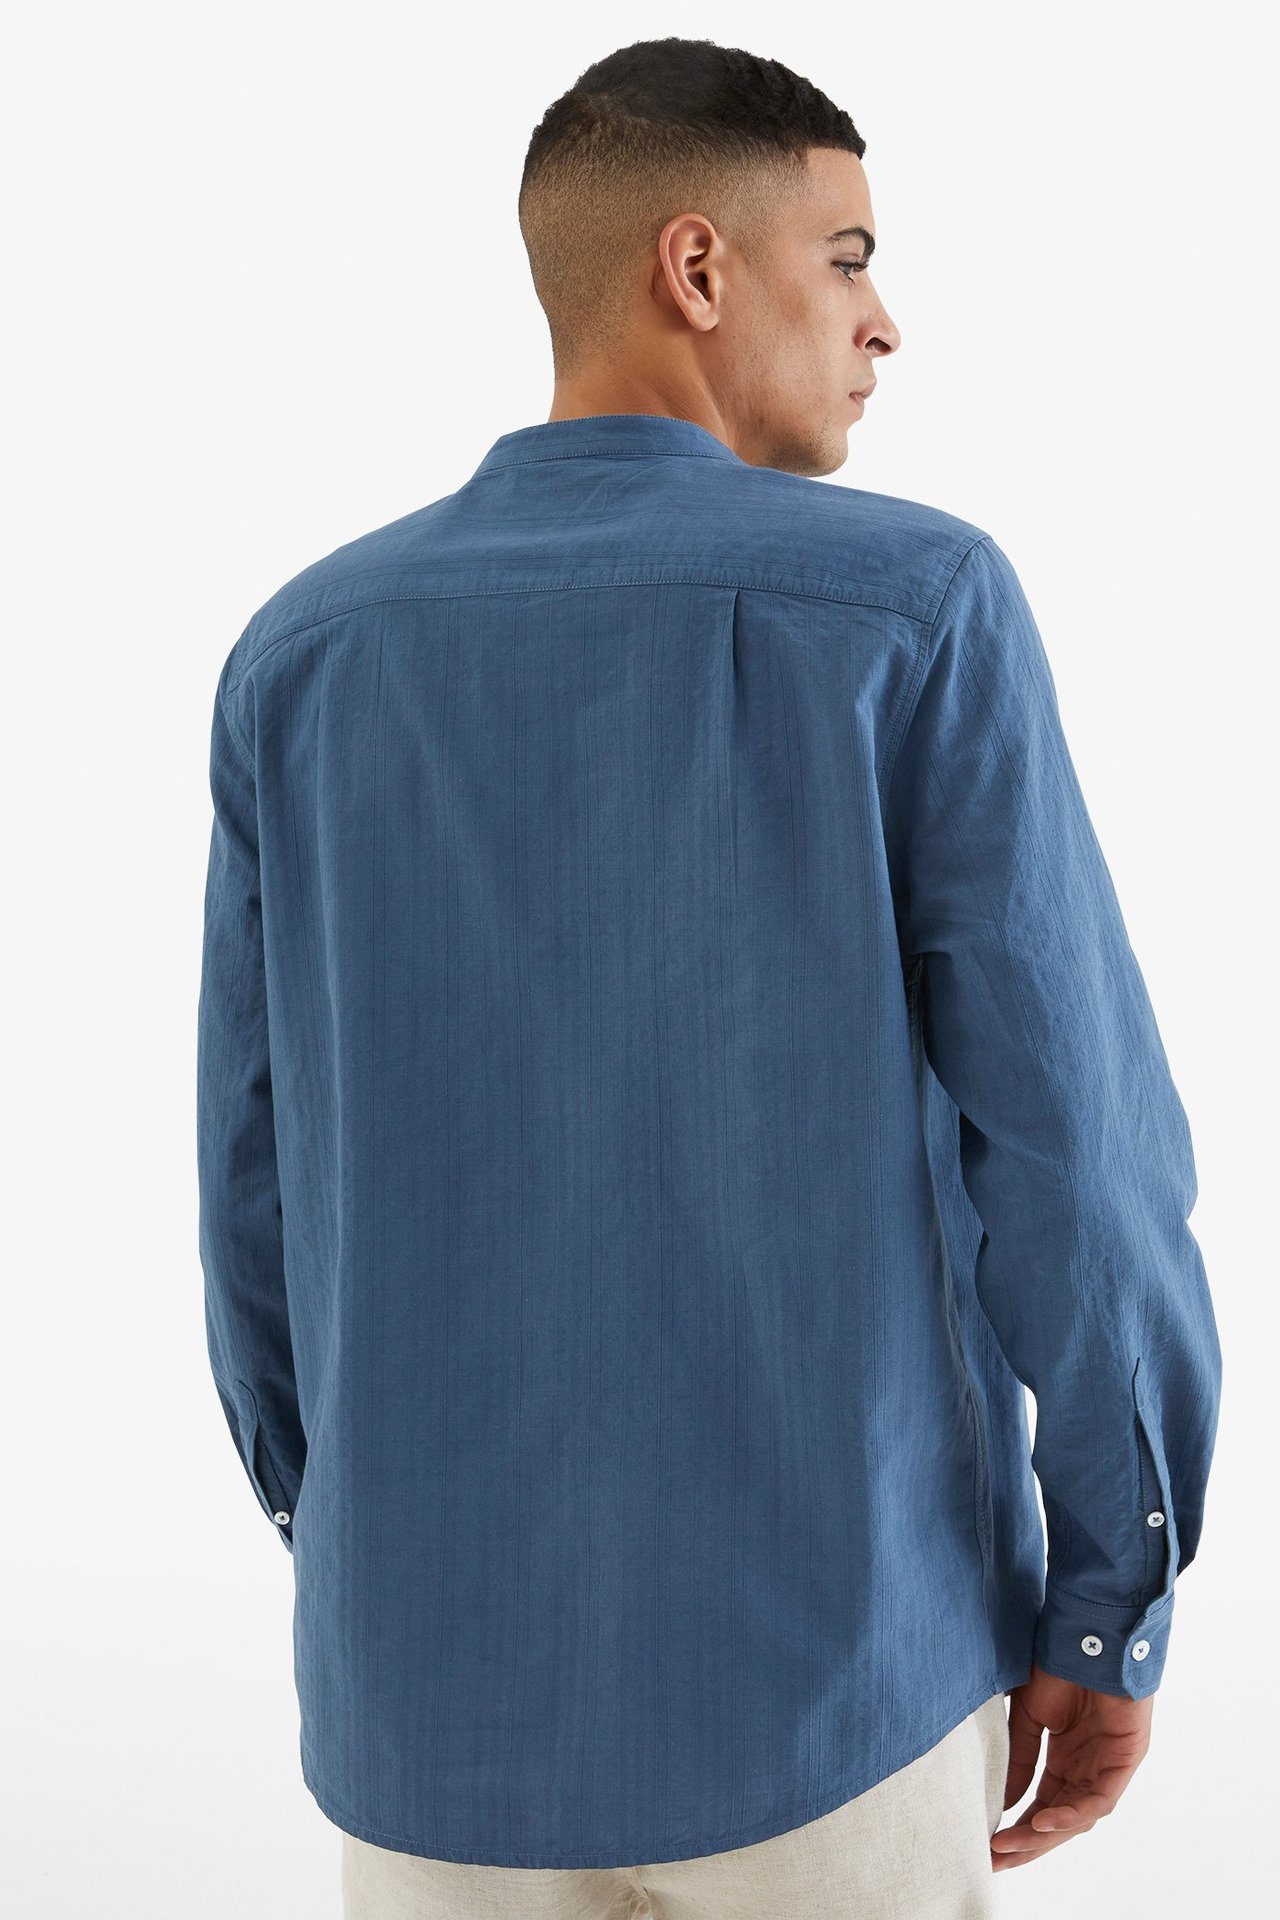 Skjorte med murerkrage Mørkeblå - null - 3